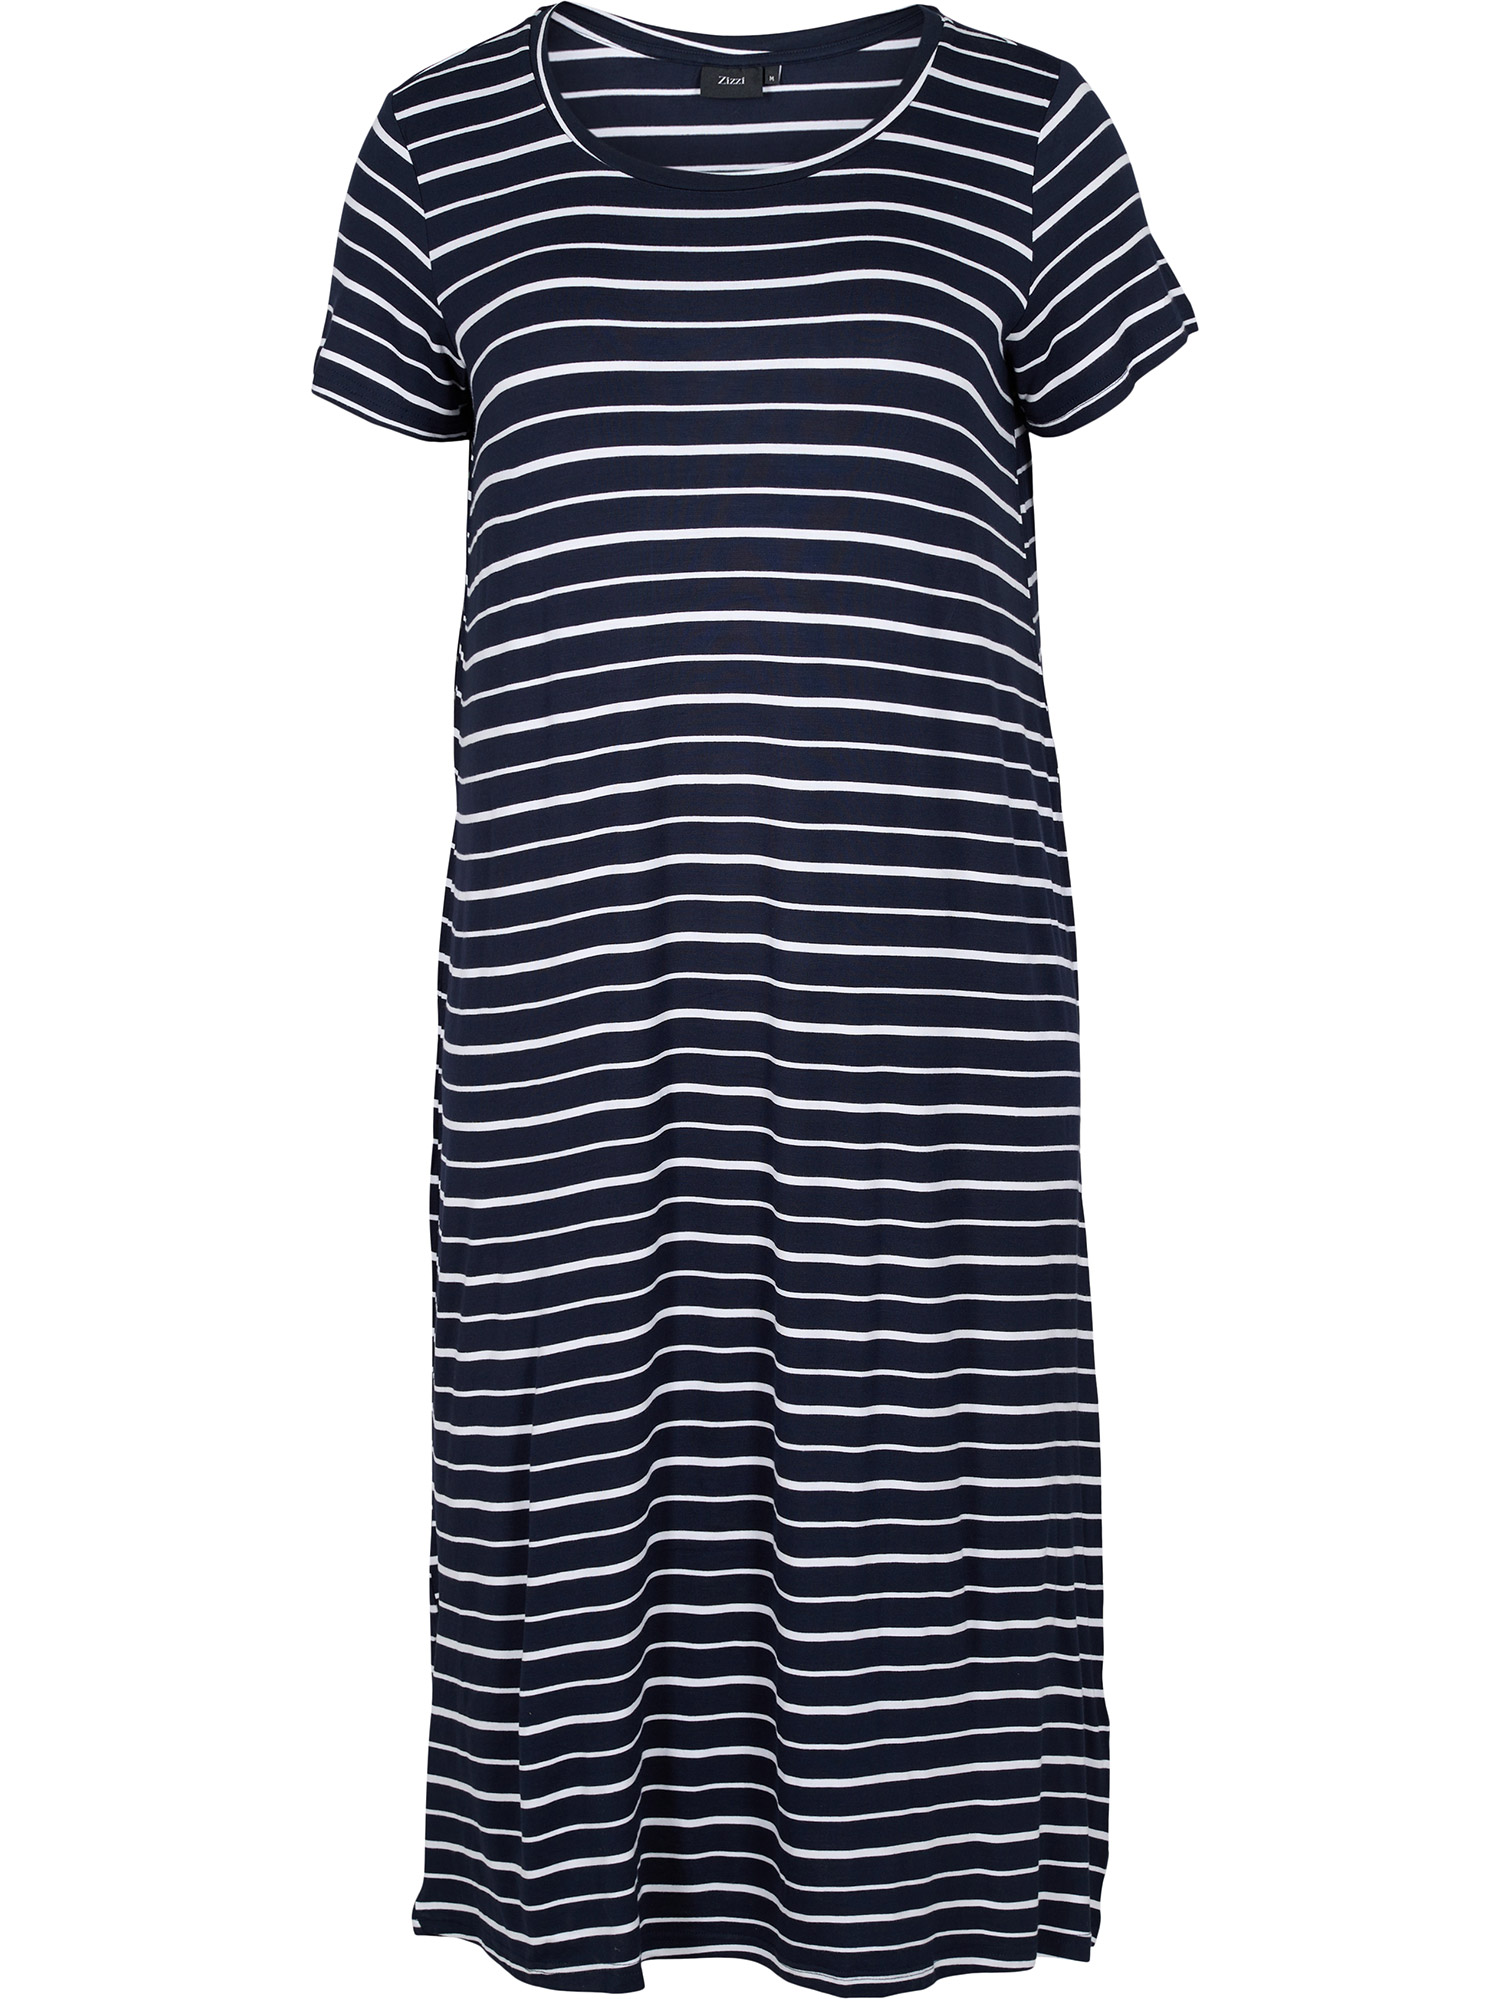 Vfreja - Lang mørkeblå kjole i viskose jersey med hvite striper fra Zizzi